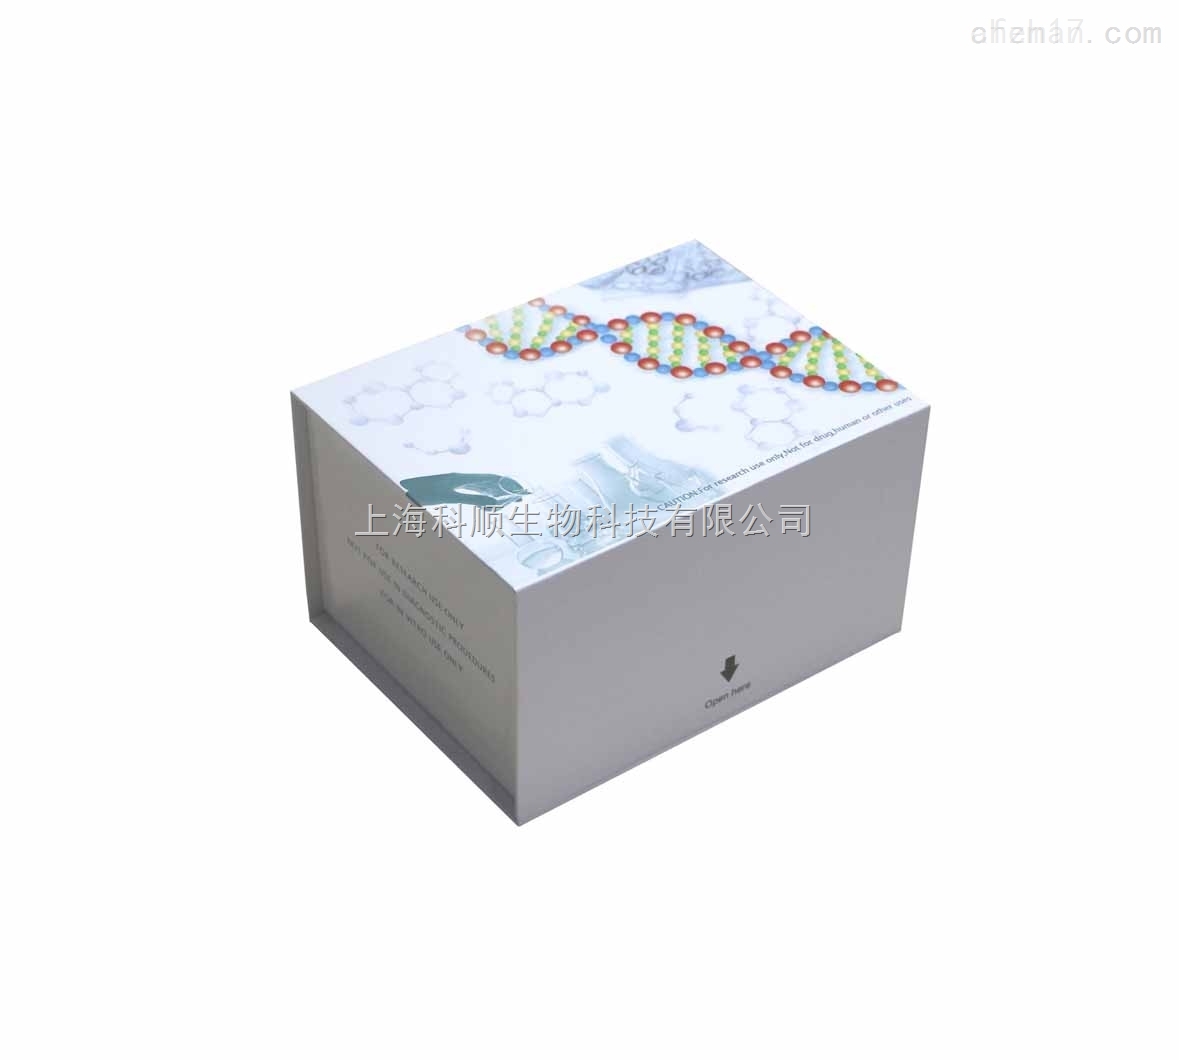 小鼠I型胶原蛋白检测试剂盒说明书